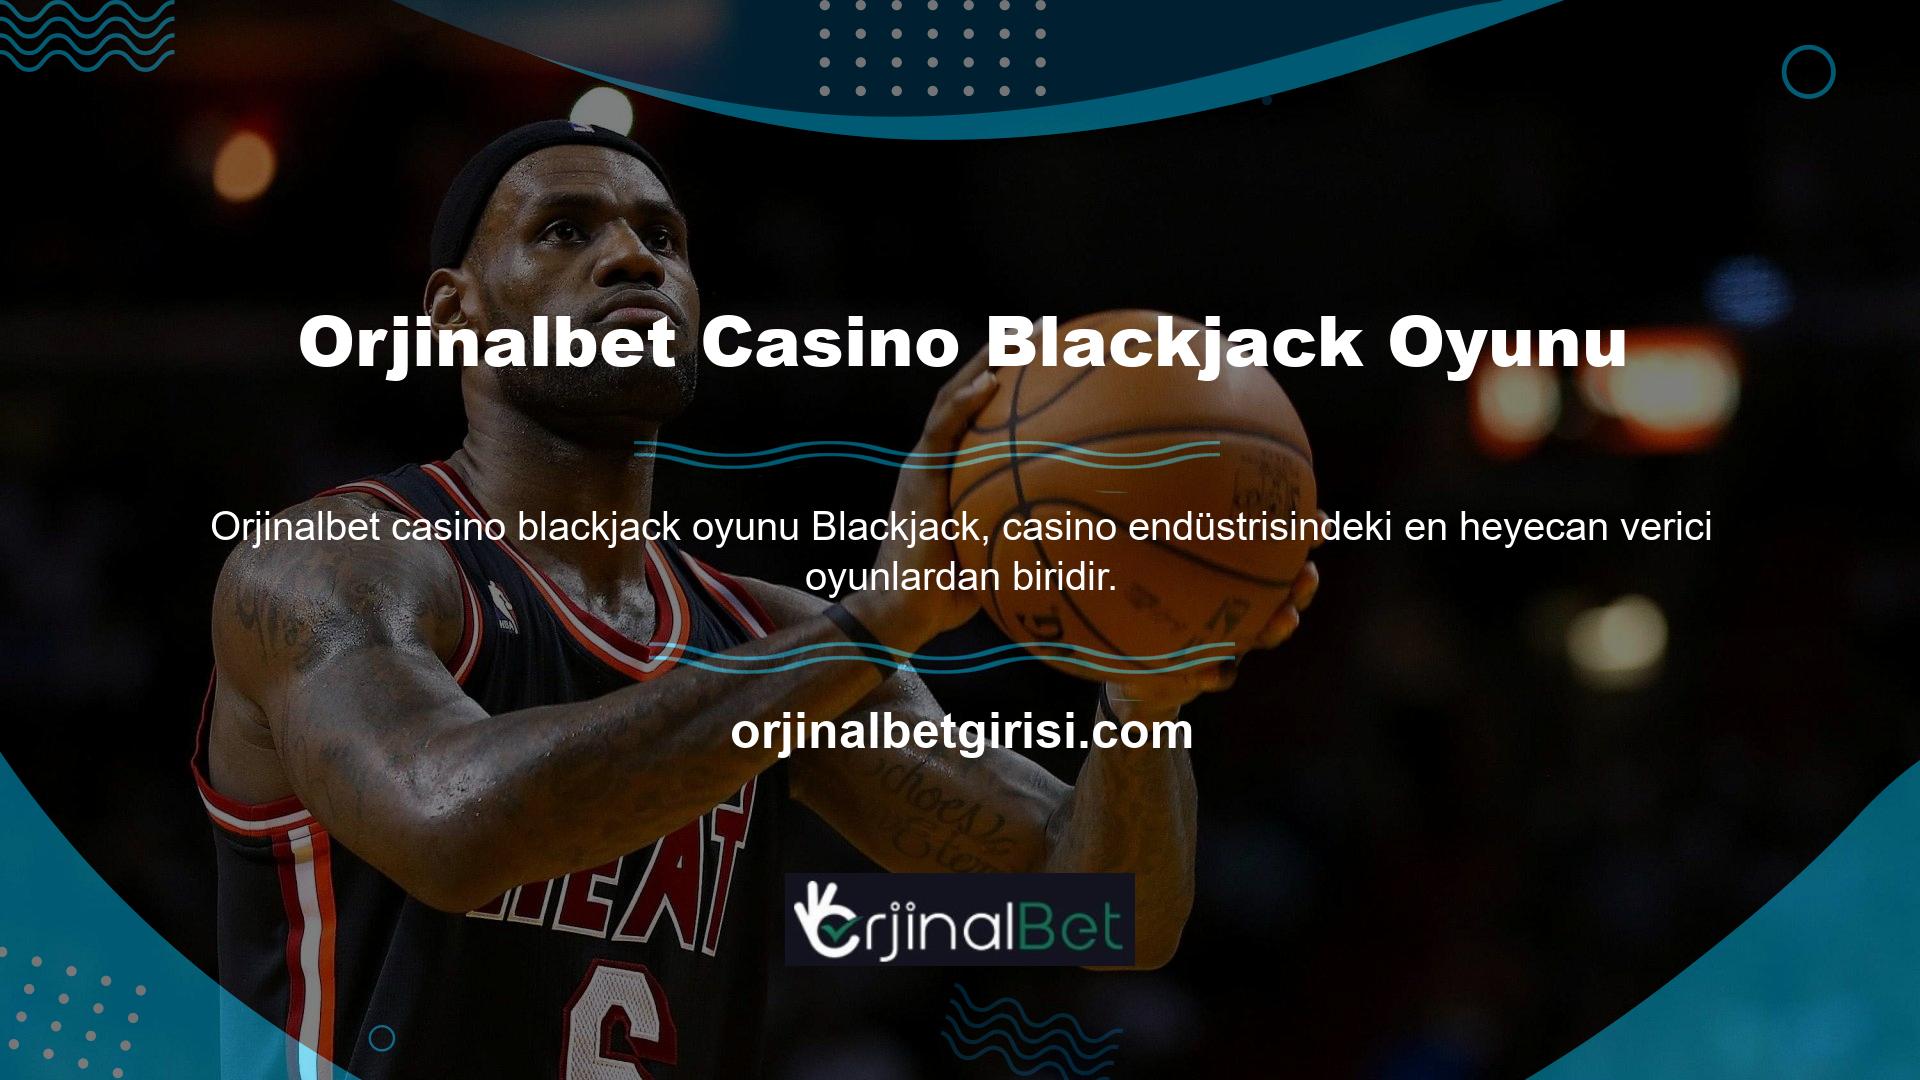 Orjinalbet, farklı blackjack türleri ile heyecan verici bir casino sunuyor